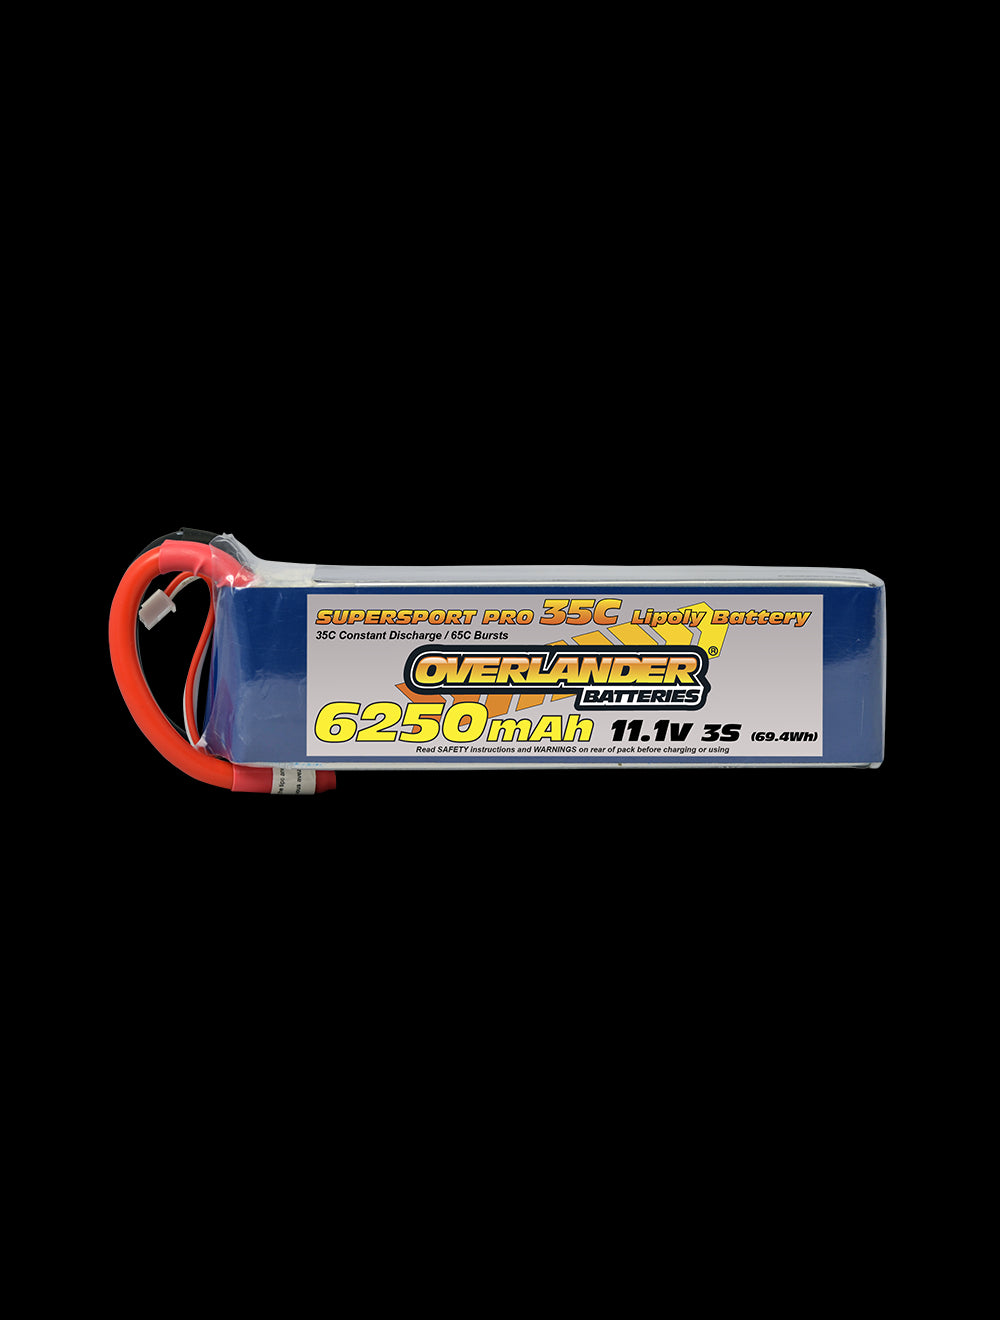 Overlander 6250mAh 11.1V 3S 35C Supersport Pro LiPo Battery - XT90 Connector 2792